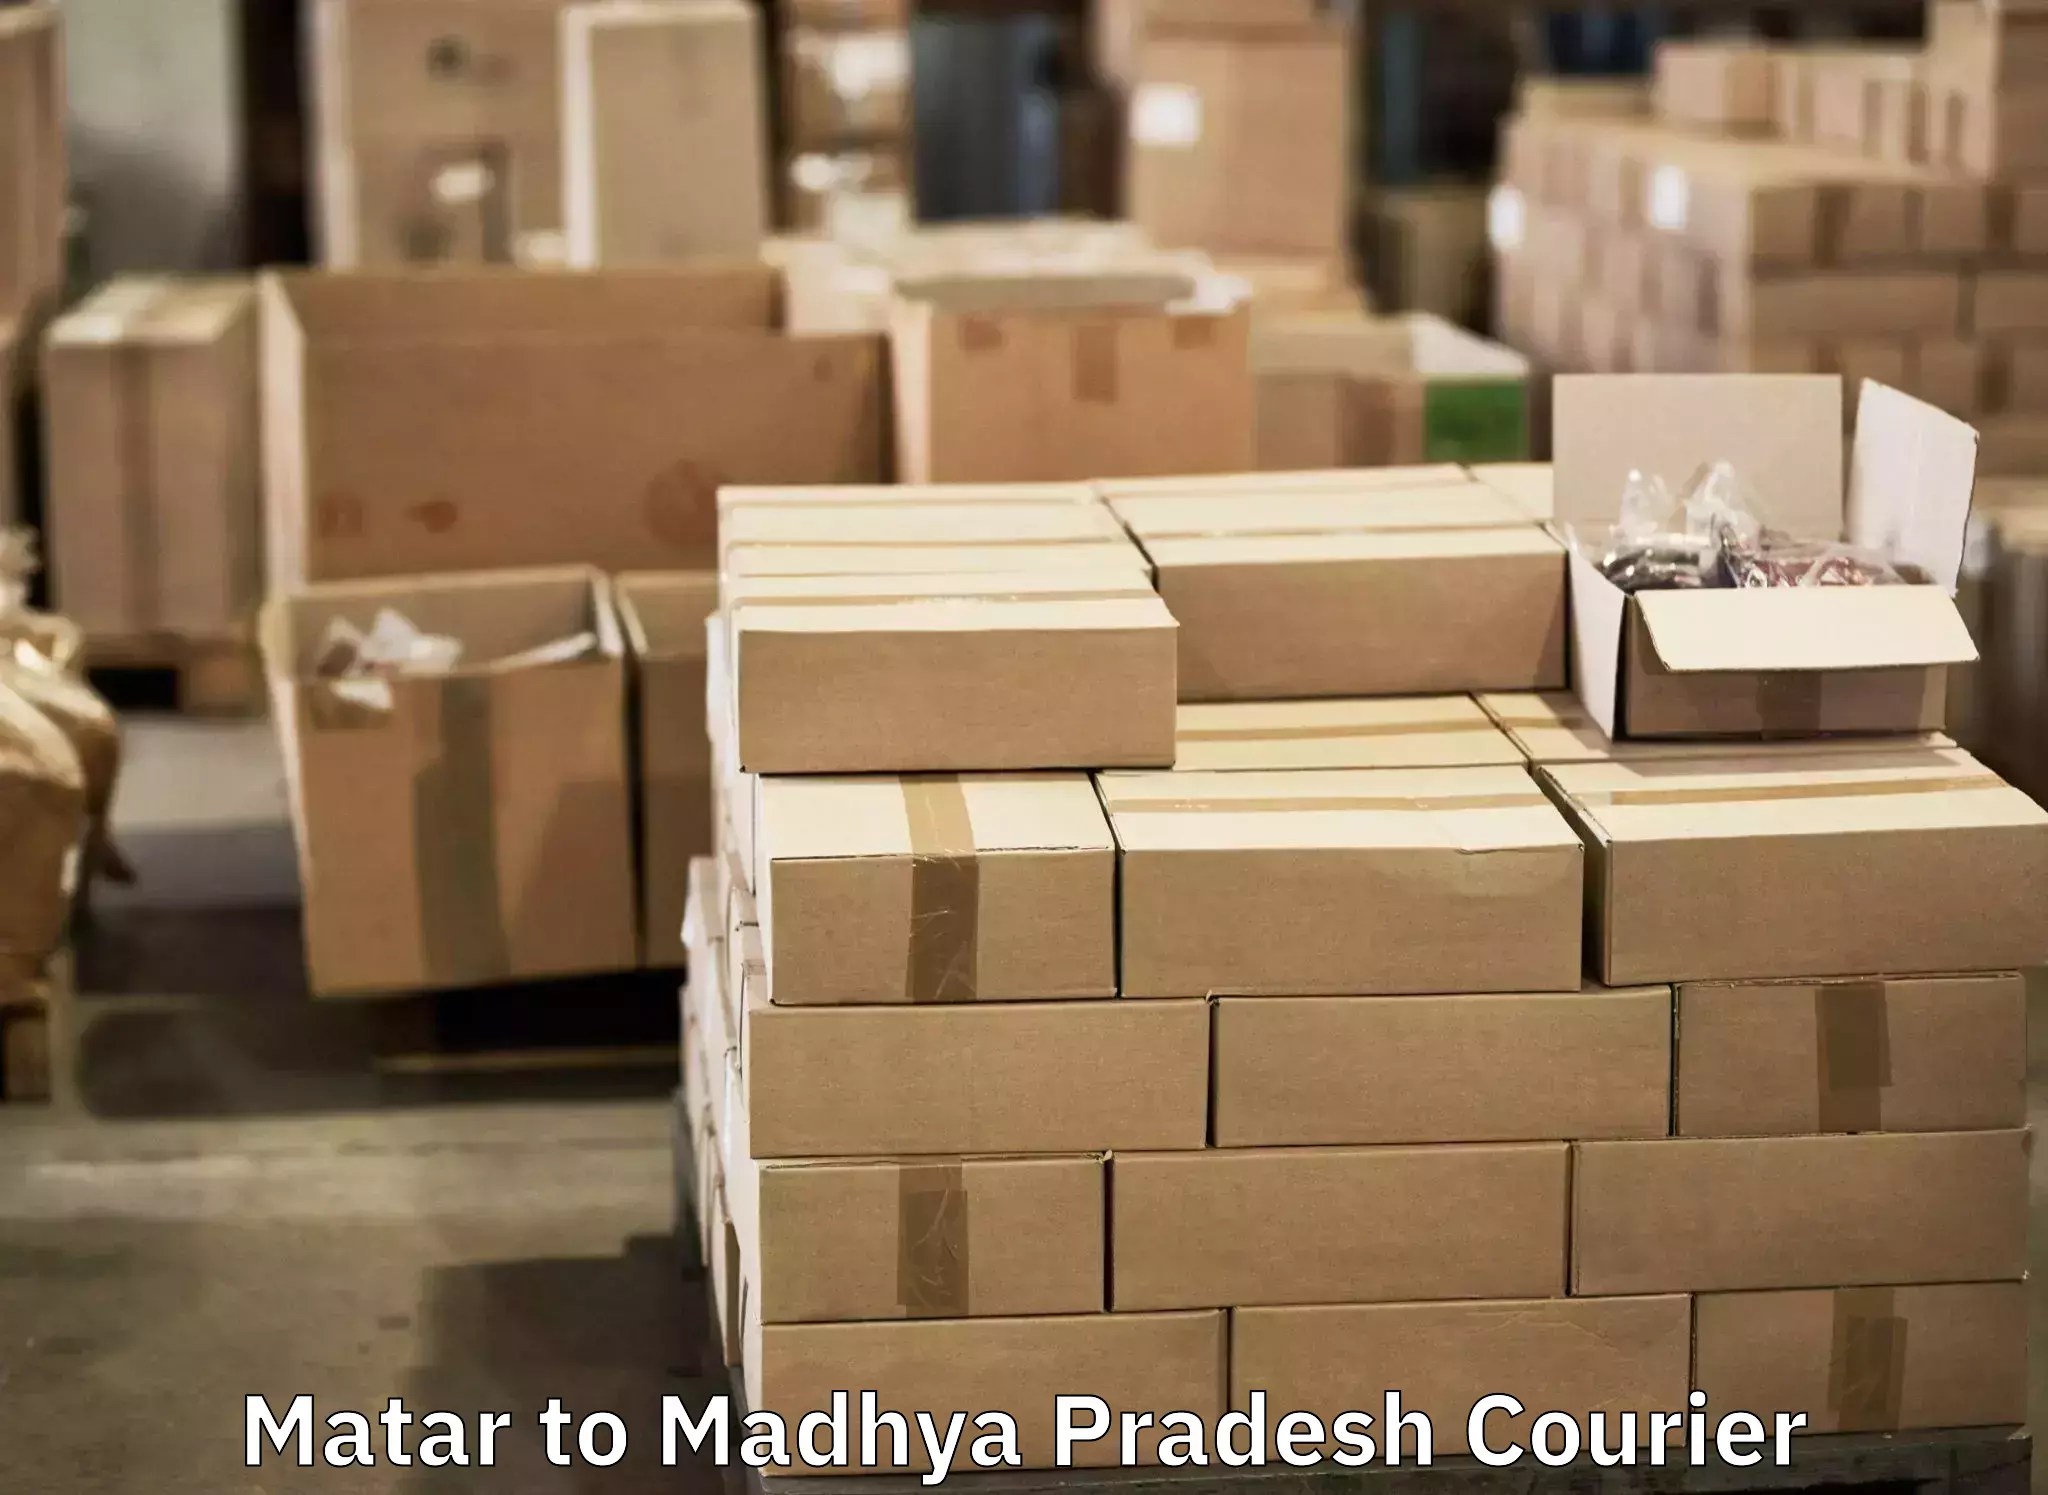 Unaccompanied luggage service Matar to IIT Indore